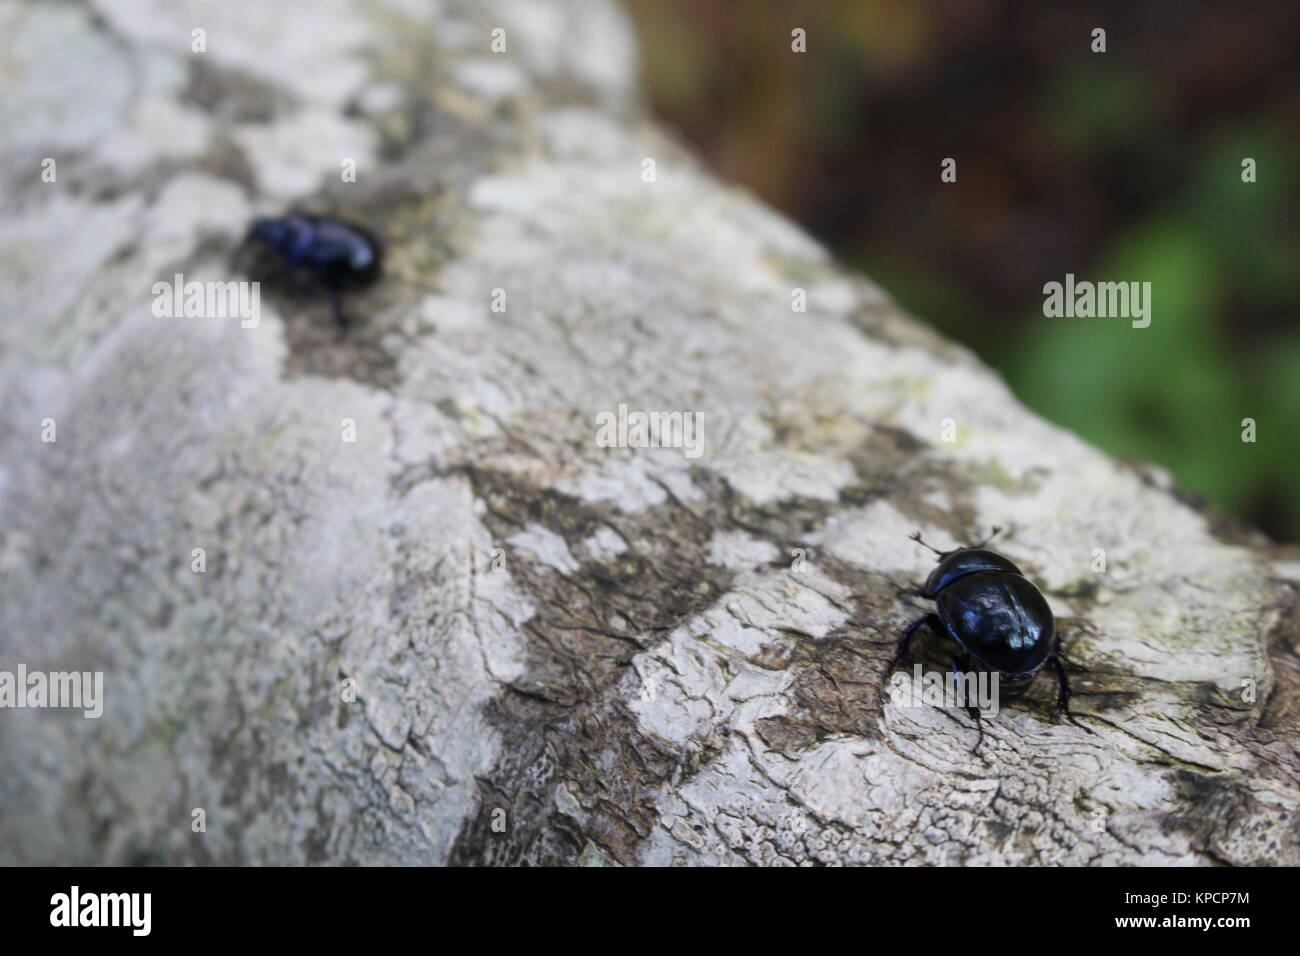 Escarabajos, Dor escarabajo, Geotropes stercorarius, Foto de stock